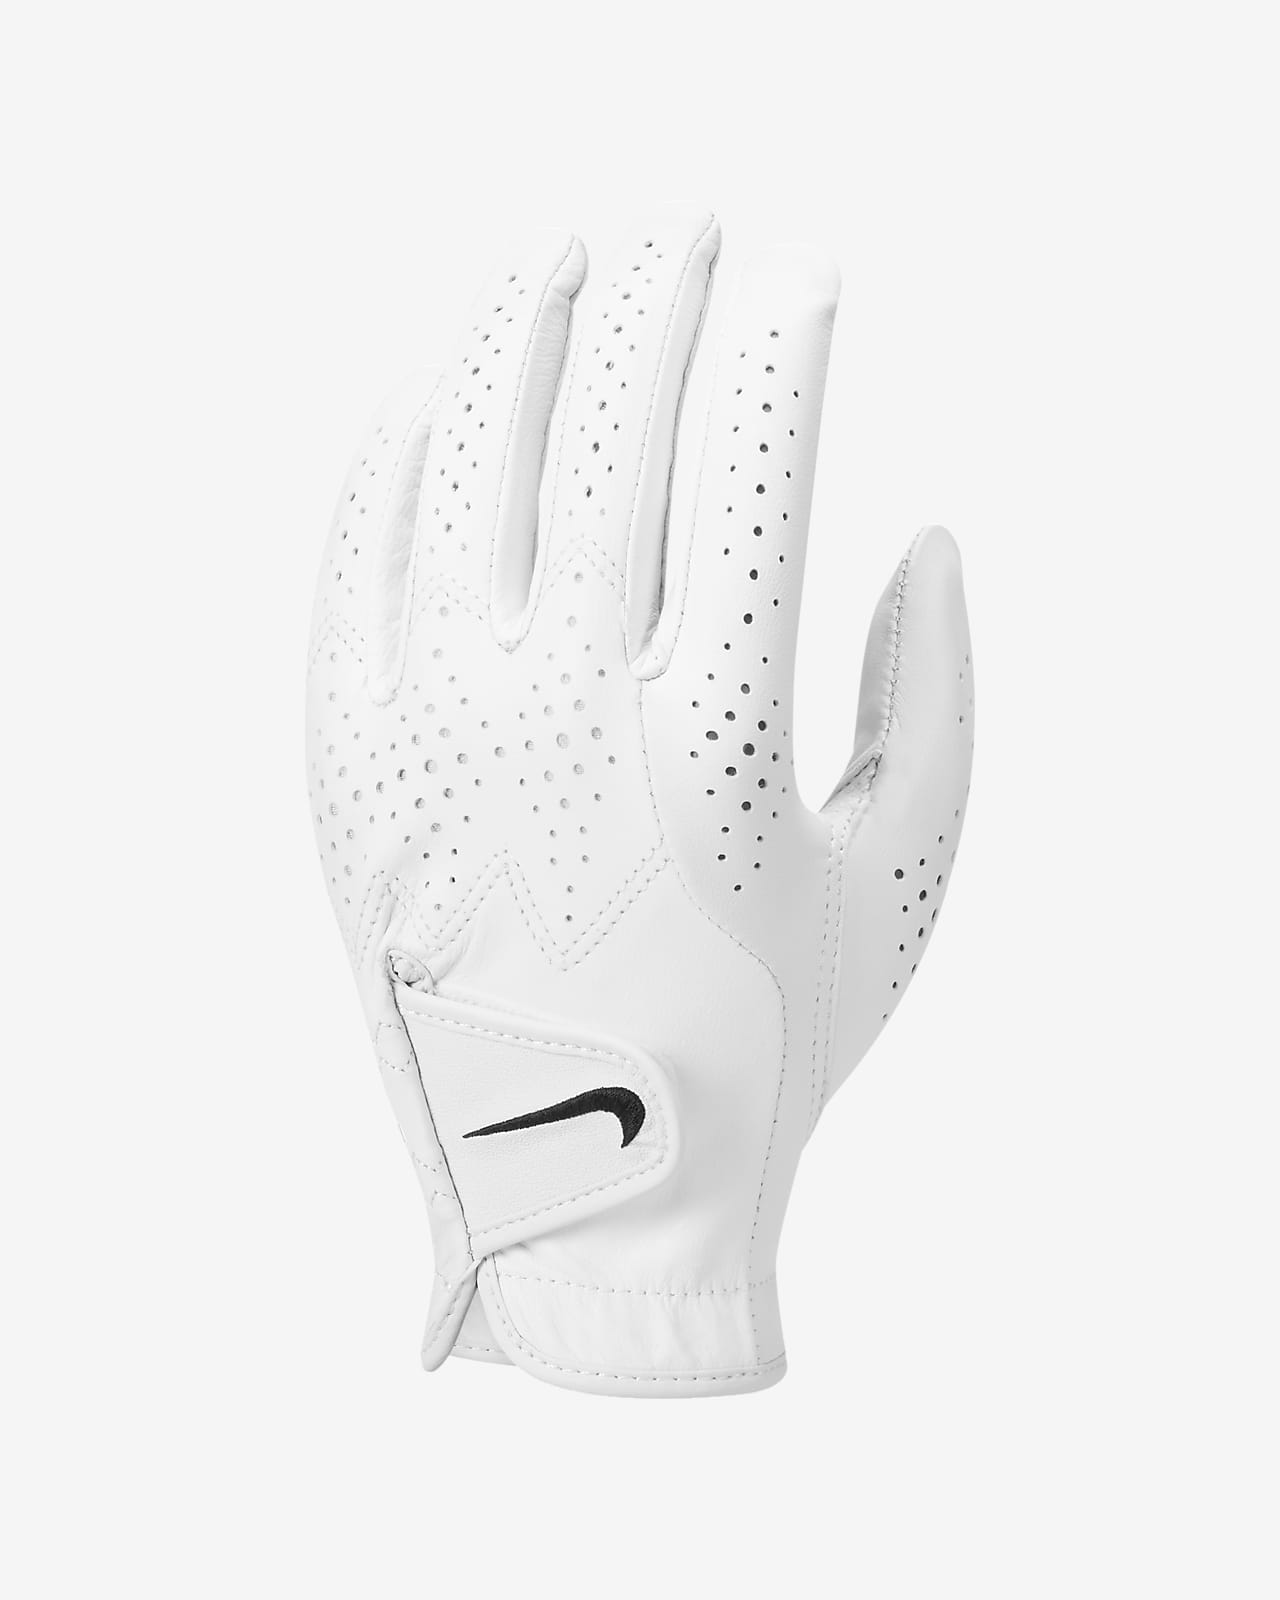 Damska rękawica do golfa Nike Tour Classic 4 (na lewą dłoń)